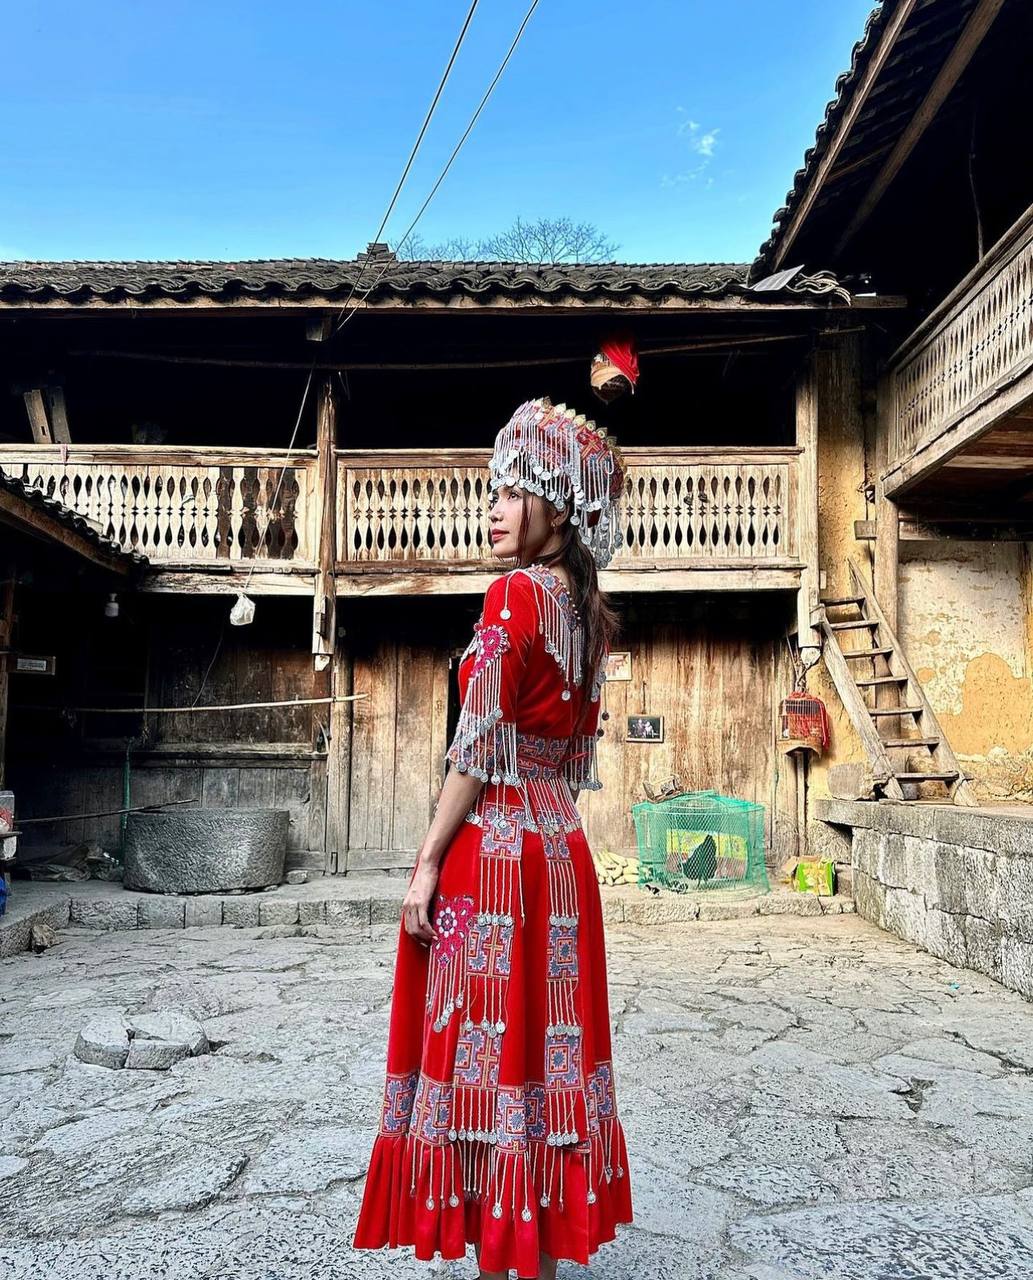 Siêu mẫu Minh Tú khoe hành trình phượt Hà Giang, thích thú diện váy áo dân tộc khiến fans cười nghiêng ngả: “Vậy là đã dịu dàng dữ chưa?” - ảnh 18